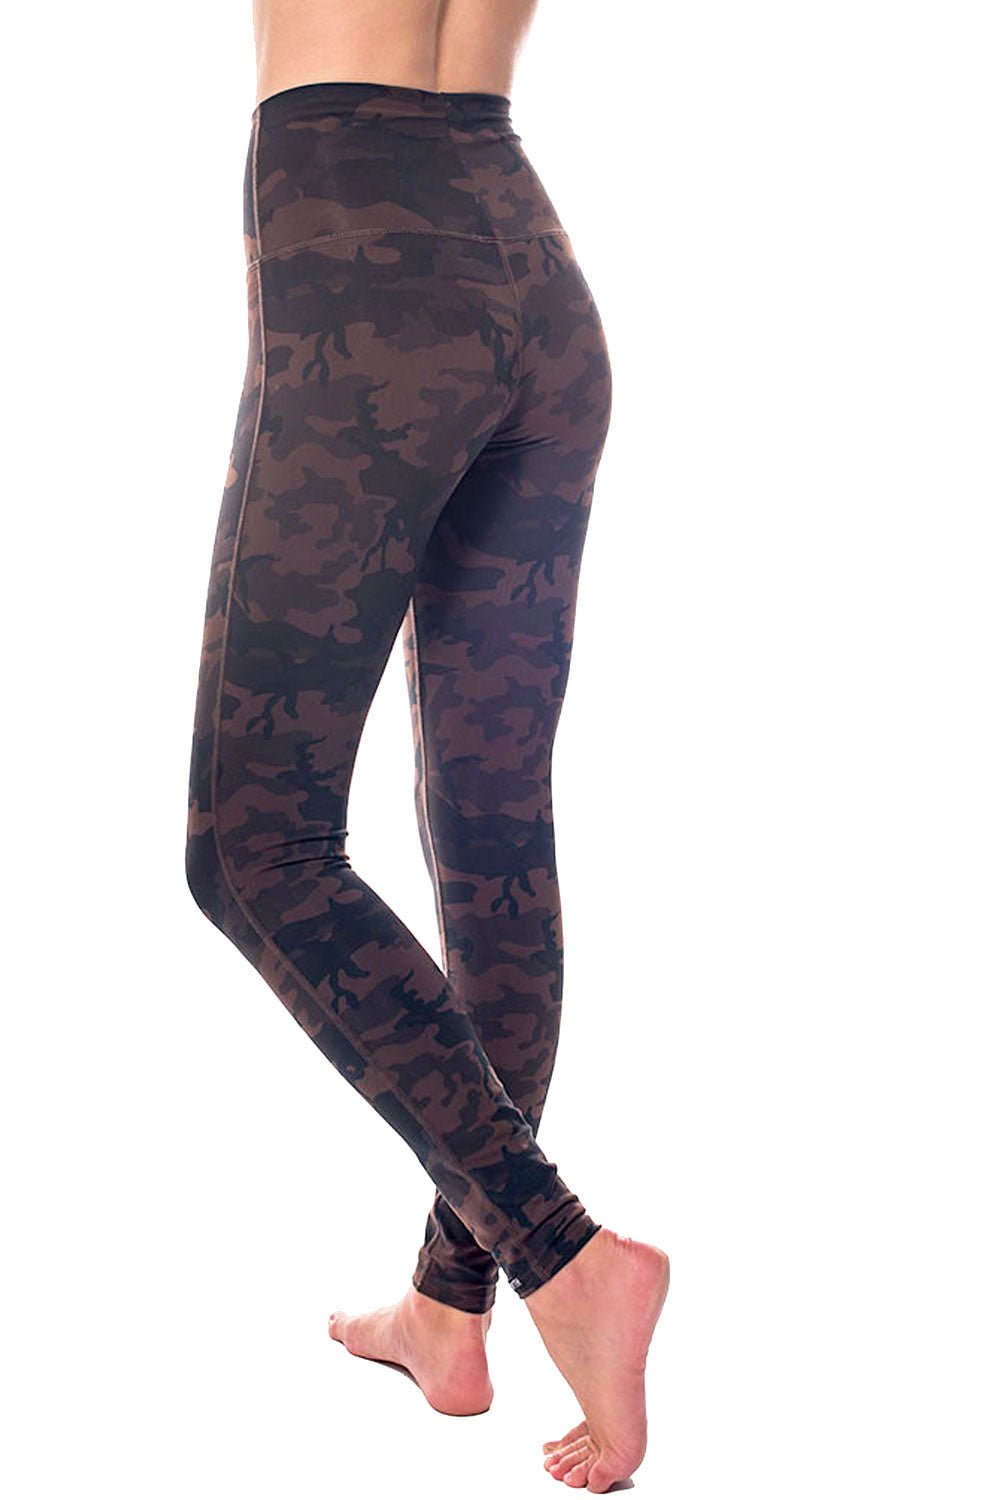 http://shop.publicmyth.ca/cdn/shop/products/Spartan-high-waist-Leggings_brown-camo-leggings.jpg?v=1672185463